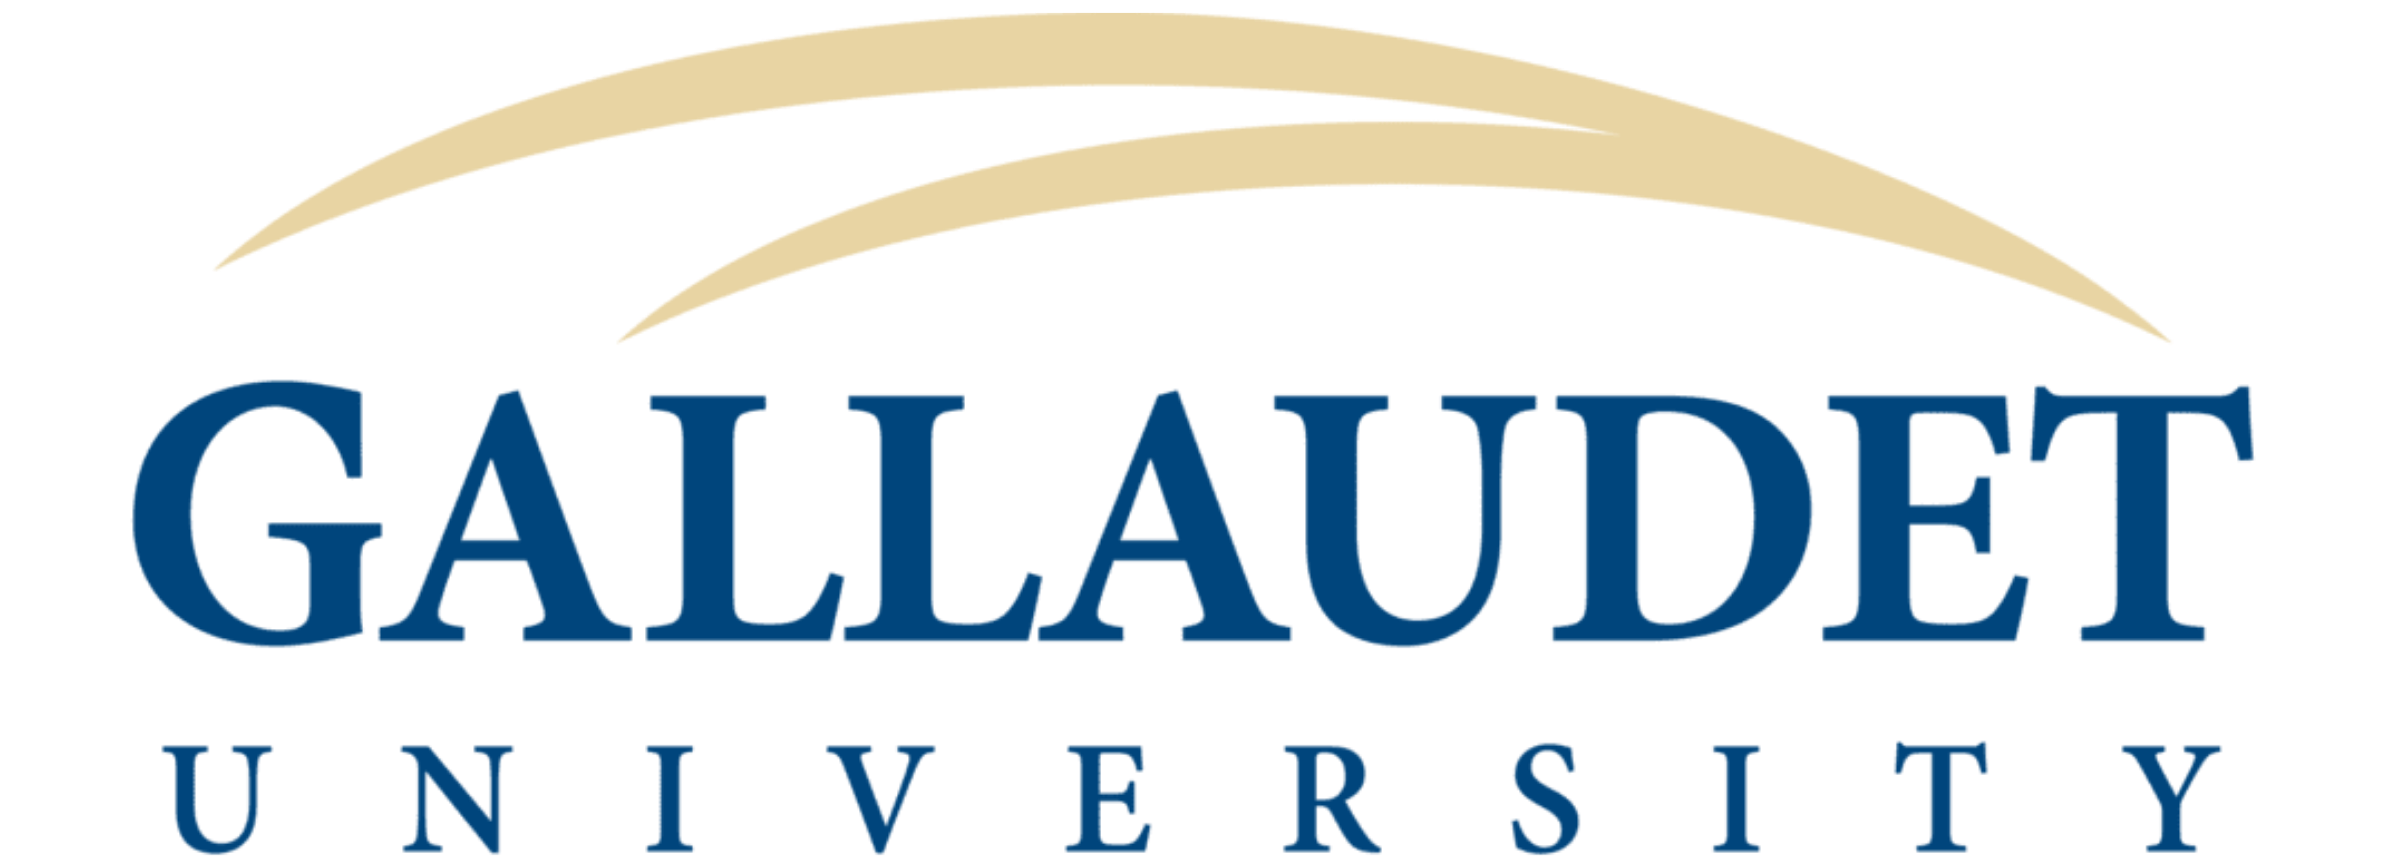 Gallaudet Univ